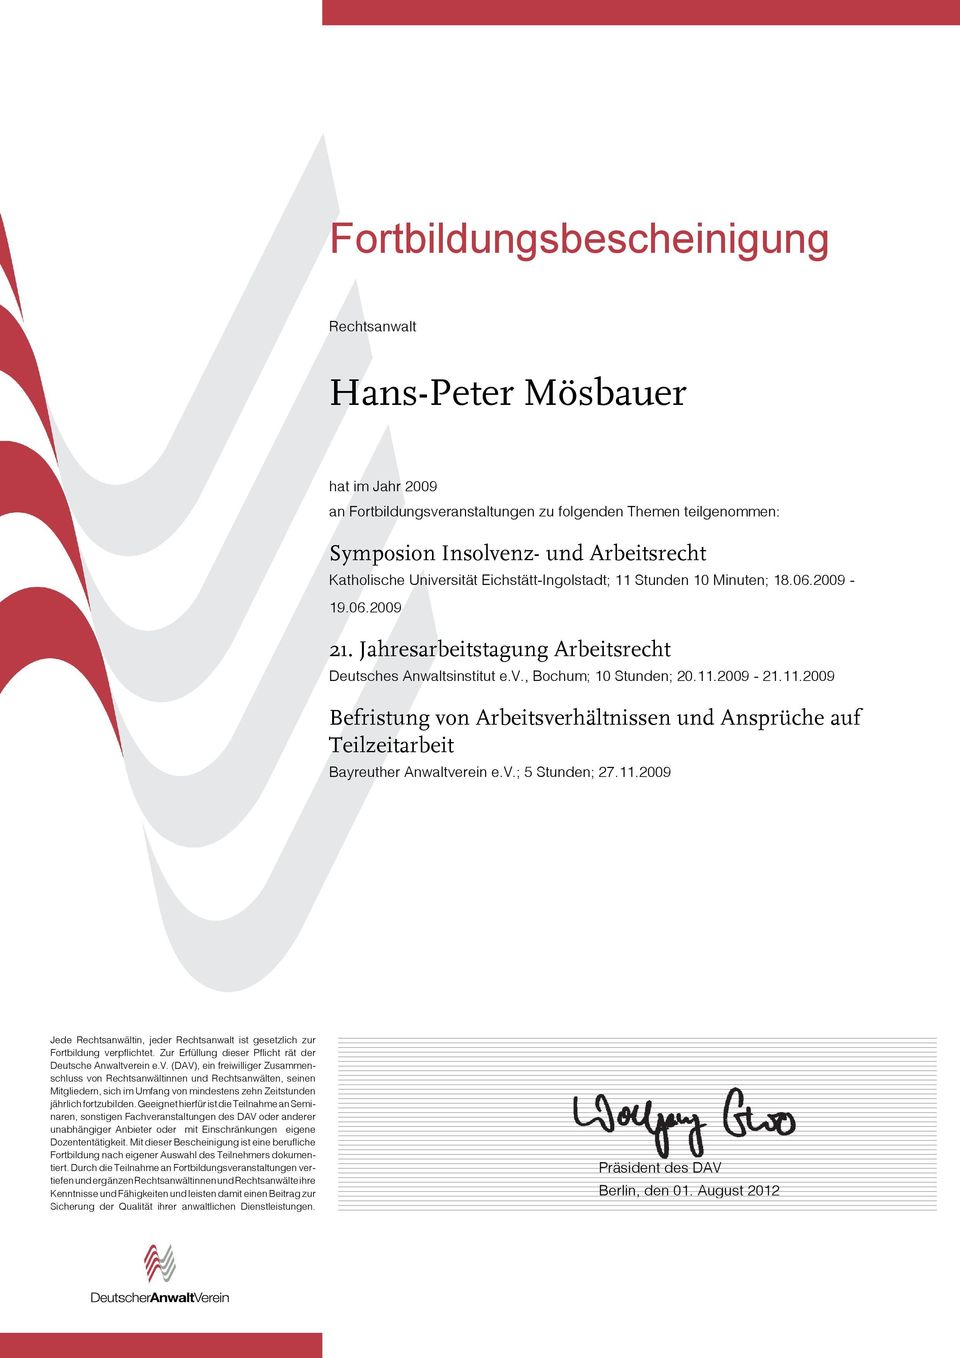 Jahresarbeitstagung Arbeitsrecht Deutsches Anwaltsinstitut e.v., Bochum; 10 Stunden; 20.11.